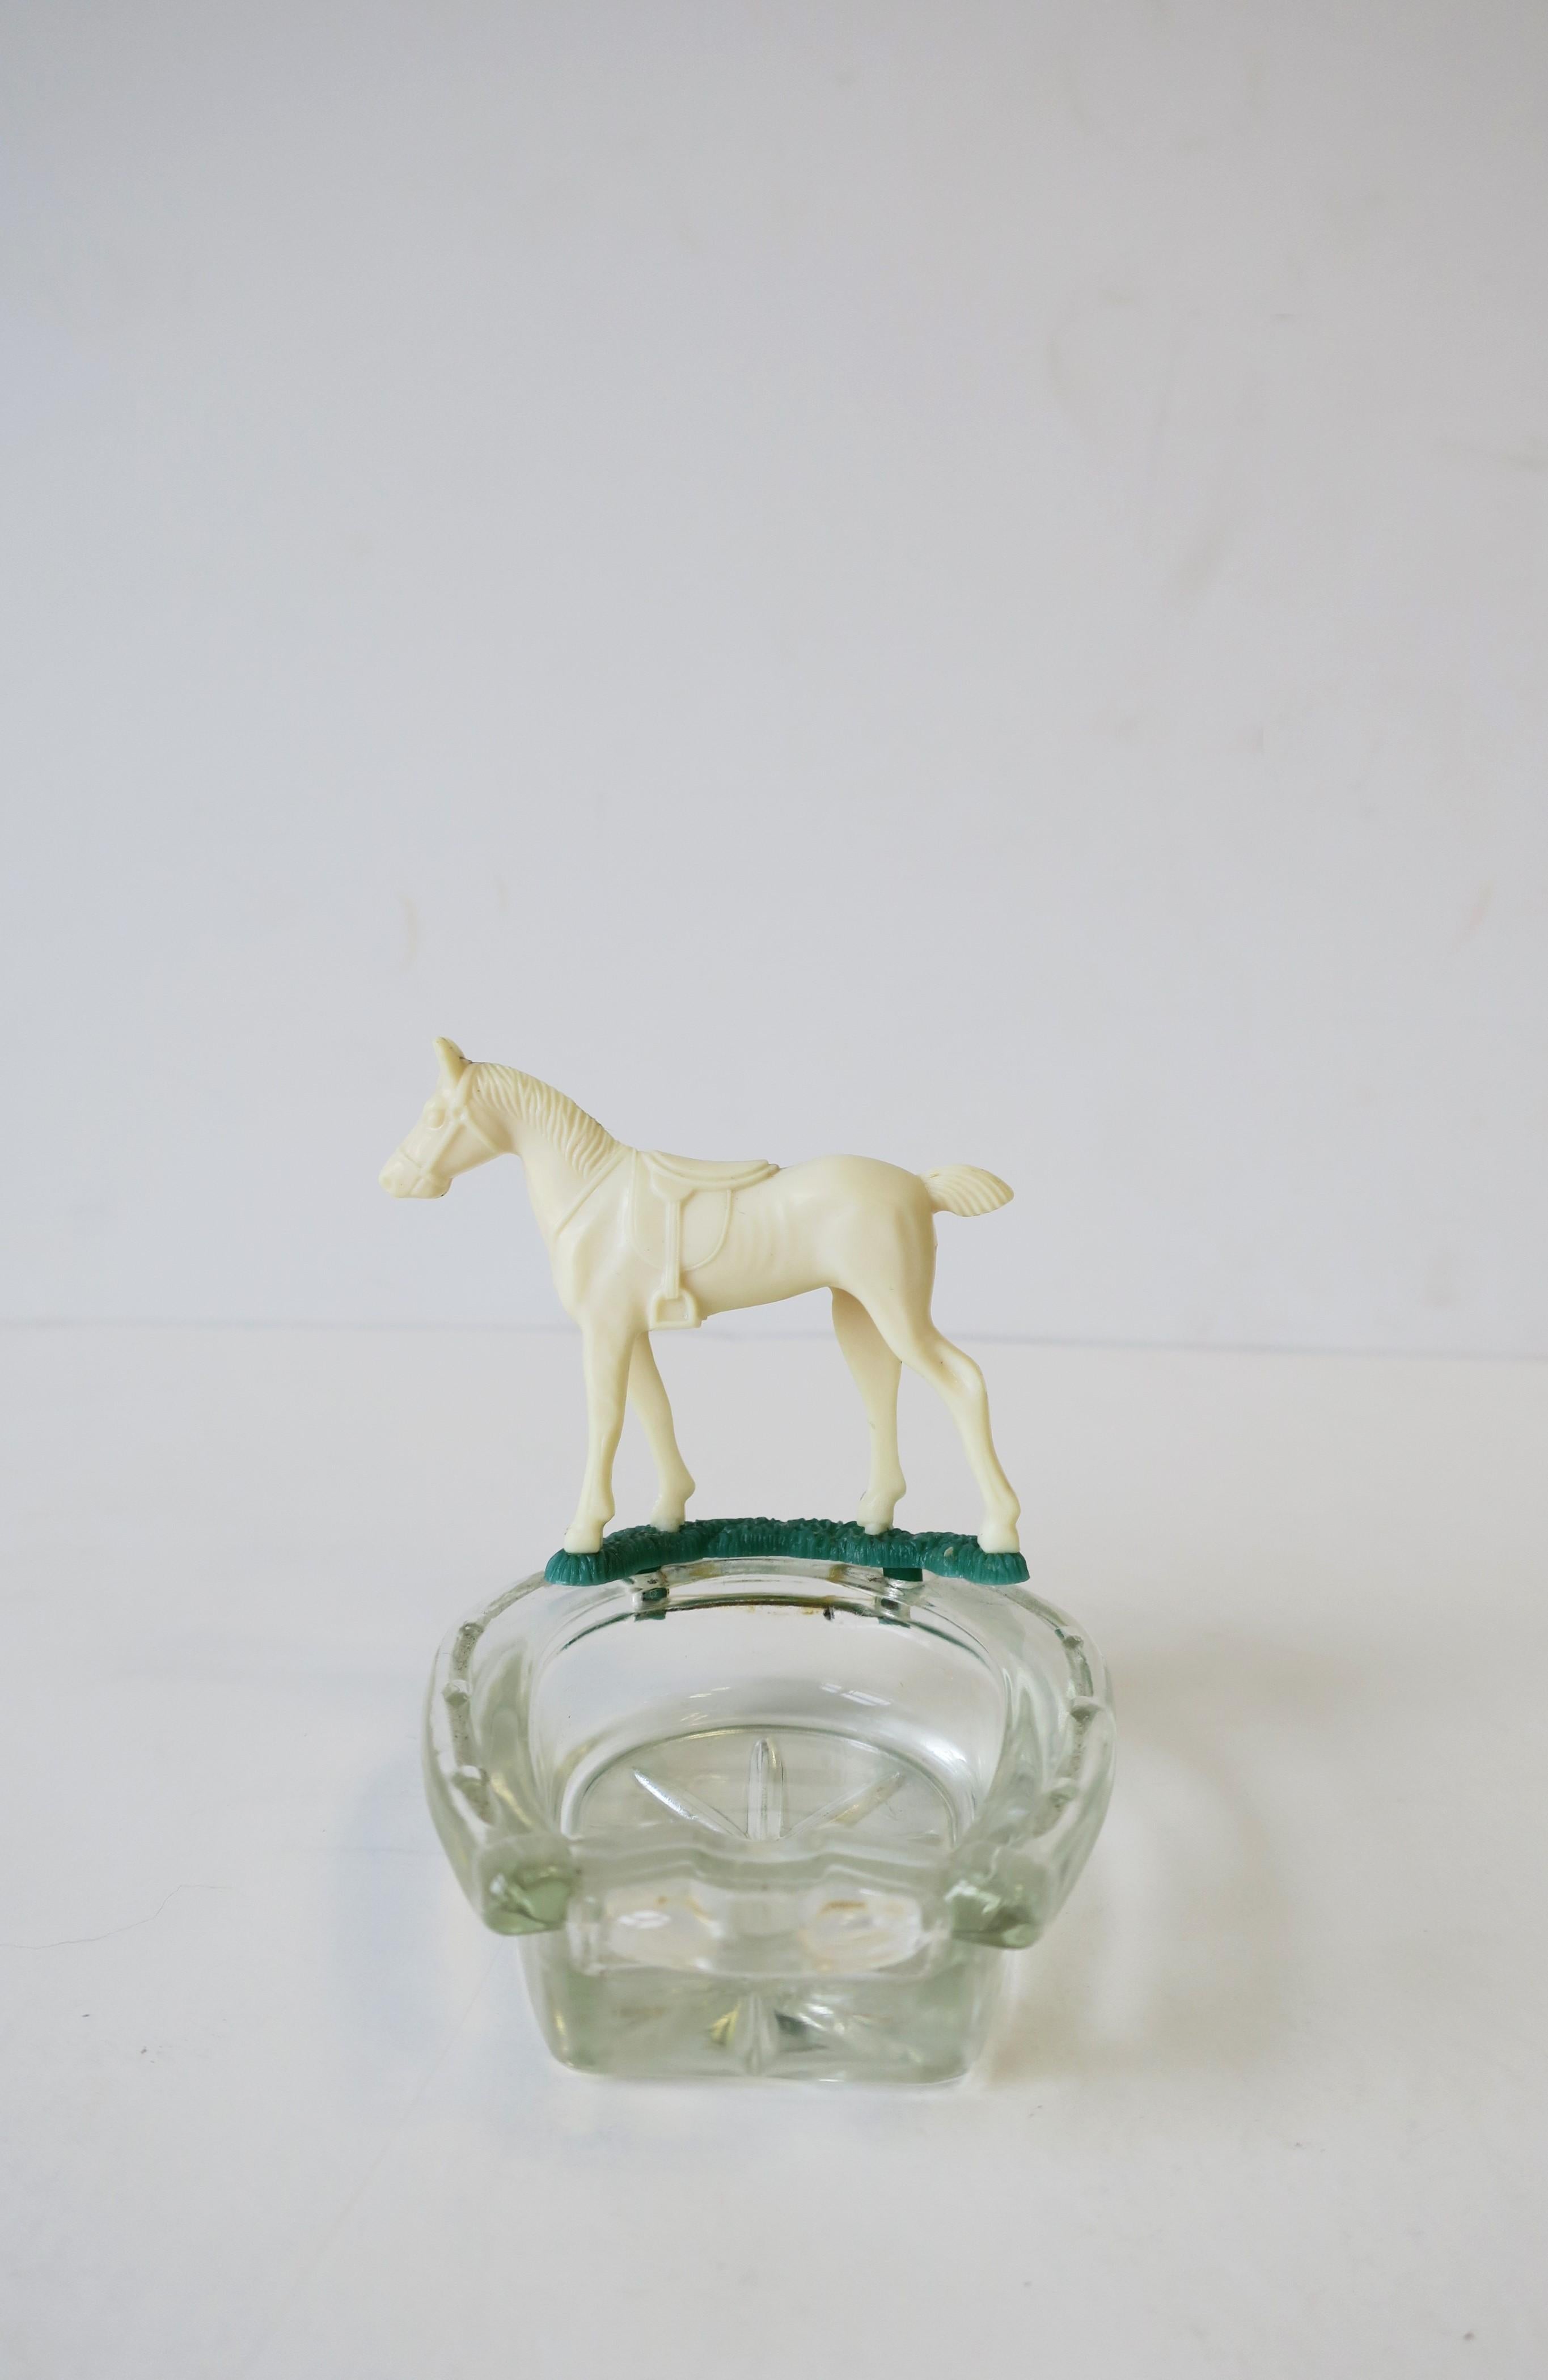 Equine Horse and Horseshoe Trinket Jewelry Dish Ashtray 2